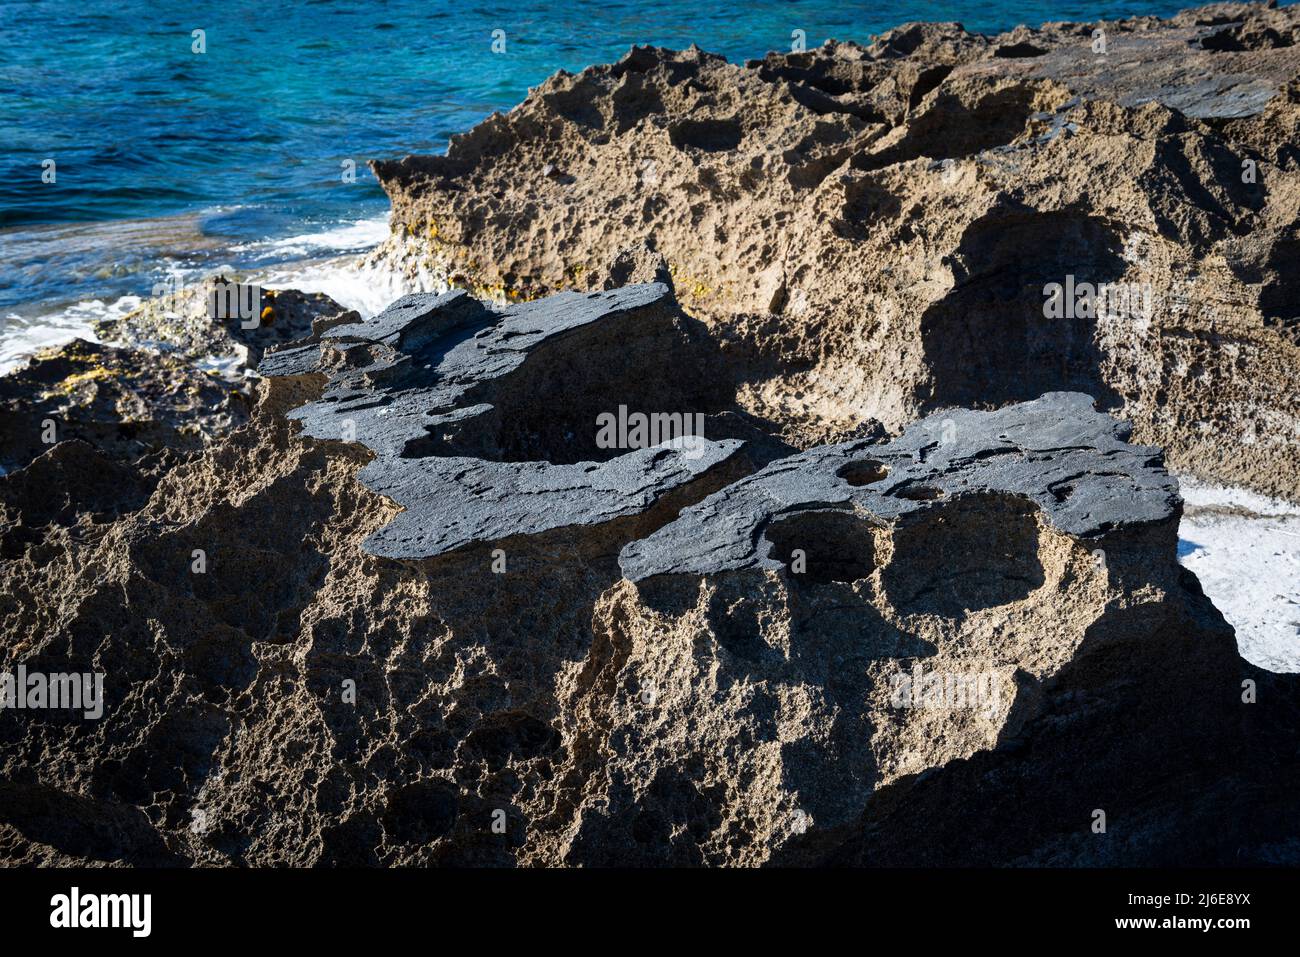 Geologische Spezialitäten - vulkanische Gesteinsformationen aus ehemaliger Lava, Basalt, Porphyr in der Bucht von S'Abba Druche, Westküste, Sardinien, Italien Stockfoto